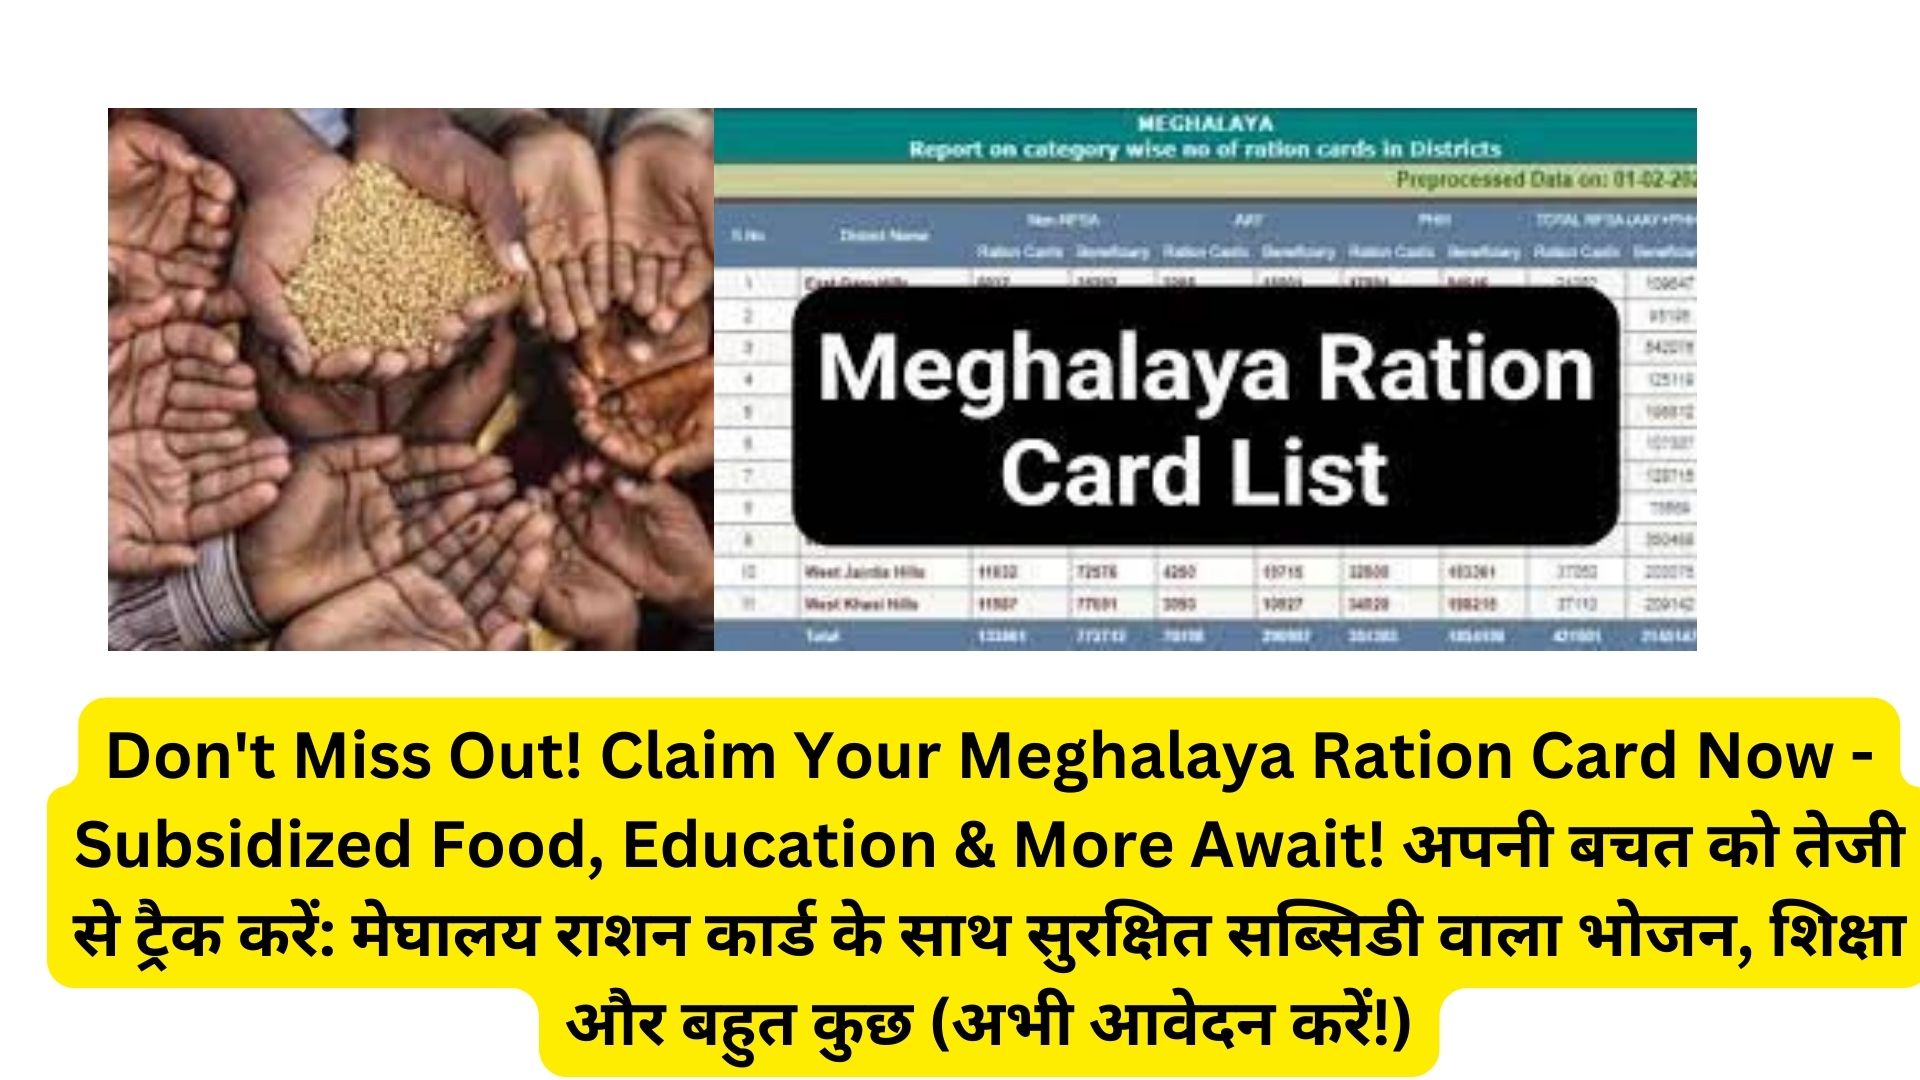 Don't Miss Out! Claim Your Meghalaya Ration Card Now - Subsidized Food, Education & More Await! अपनी बचत को तेजी से ट्रैक करें: मेघालय राशन कार्ड के साथ सुरक्षित सब्सिडी वाला भोजन, शिक्षा और बहुत कुछ (अभी आवेदन करें!)